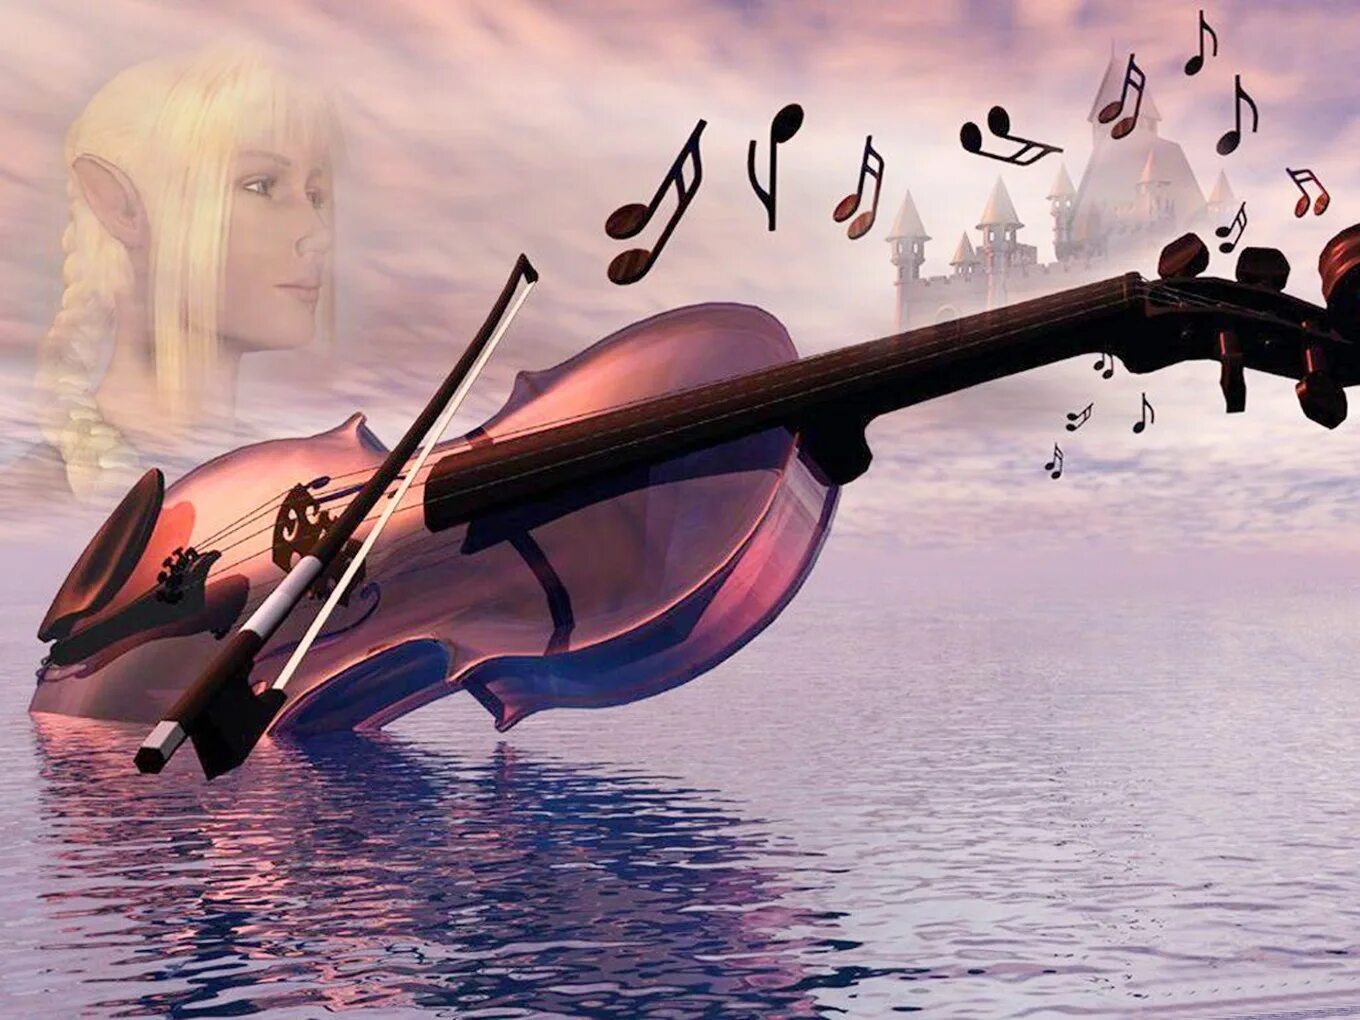 Песни от всей души 18. Скрипка. Скрипка и море. Волшебная скрипка. Скрипка и небо.